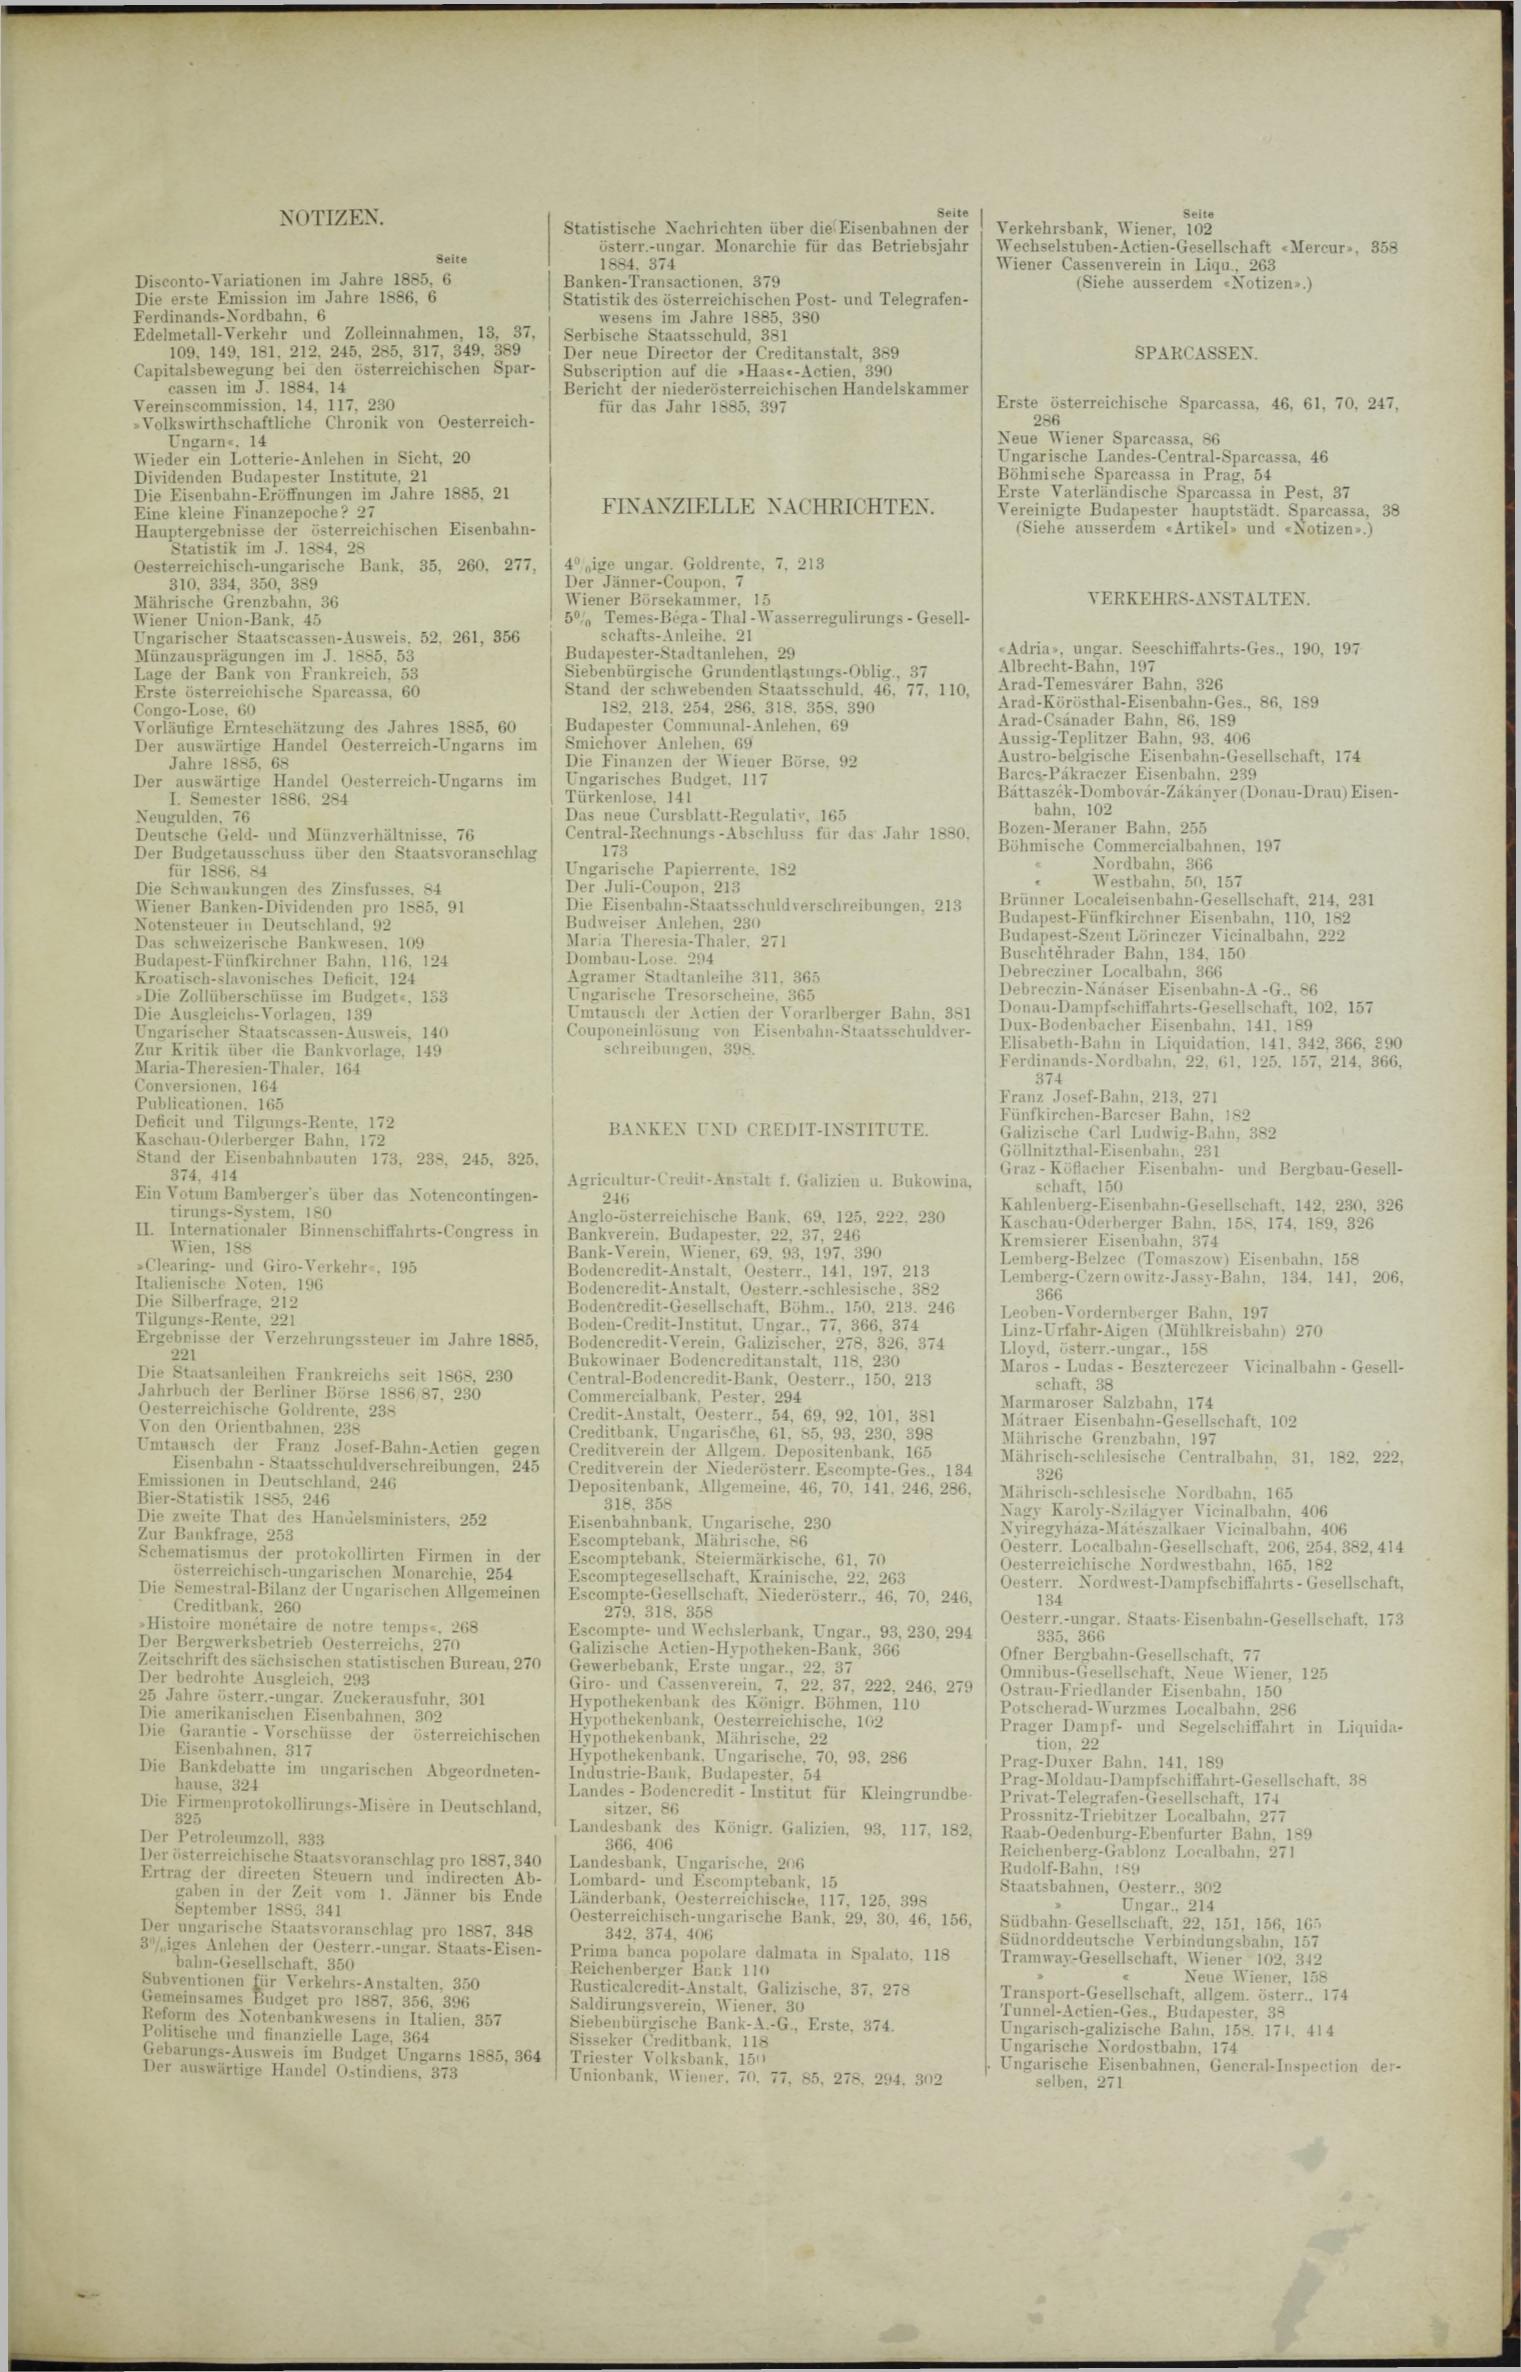 Der Tresor 03.06.1886 - Seite 11